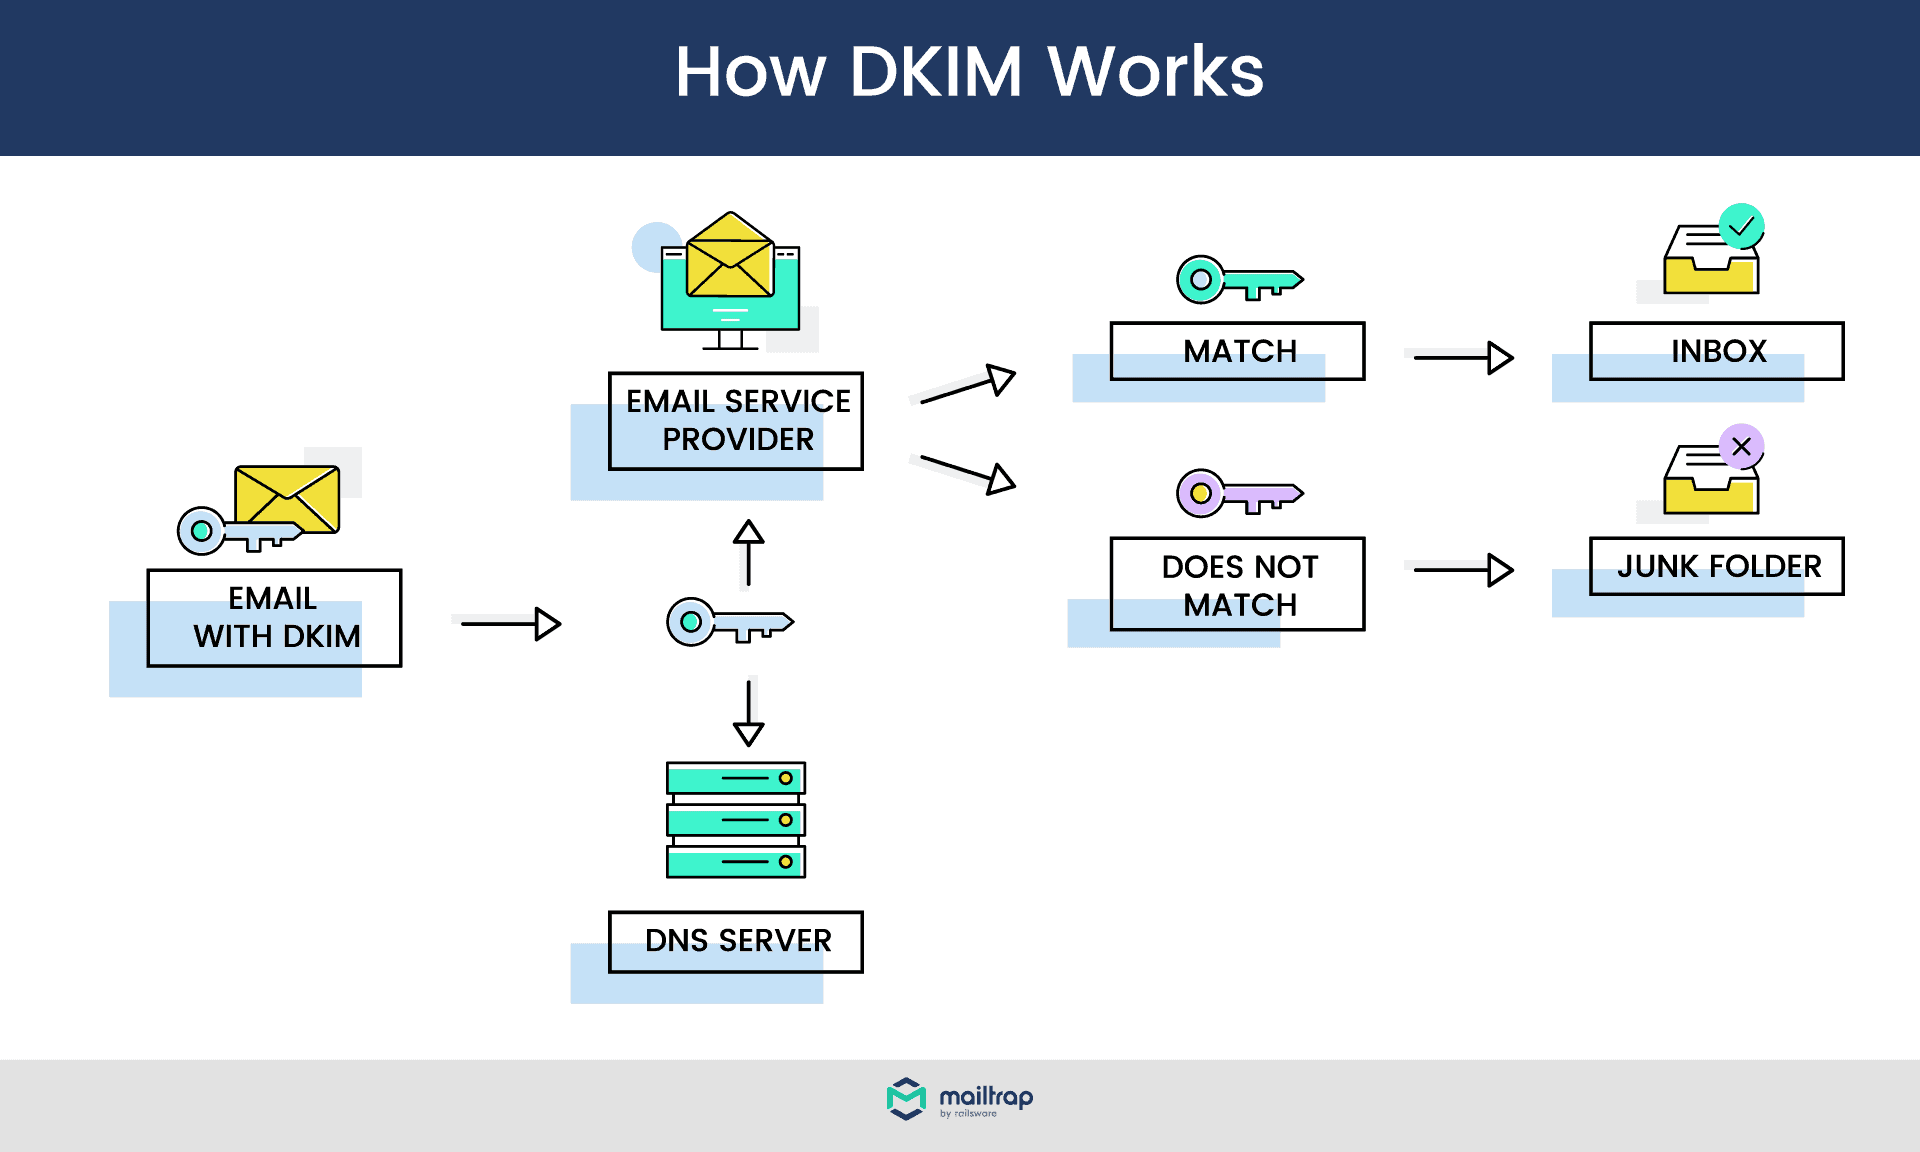 How DKIM works